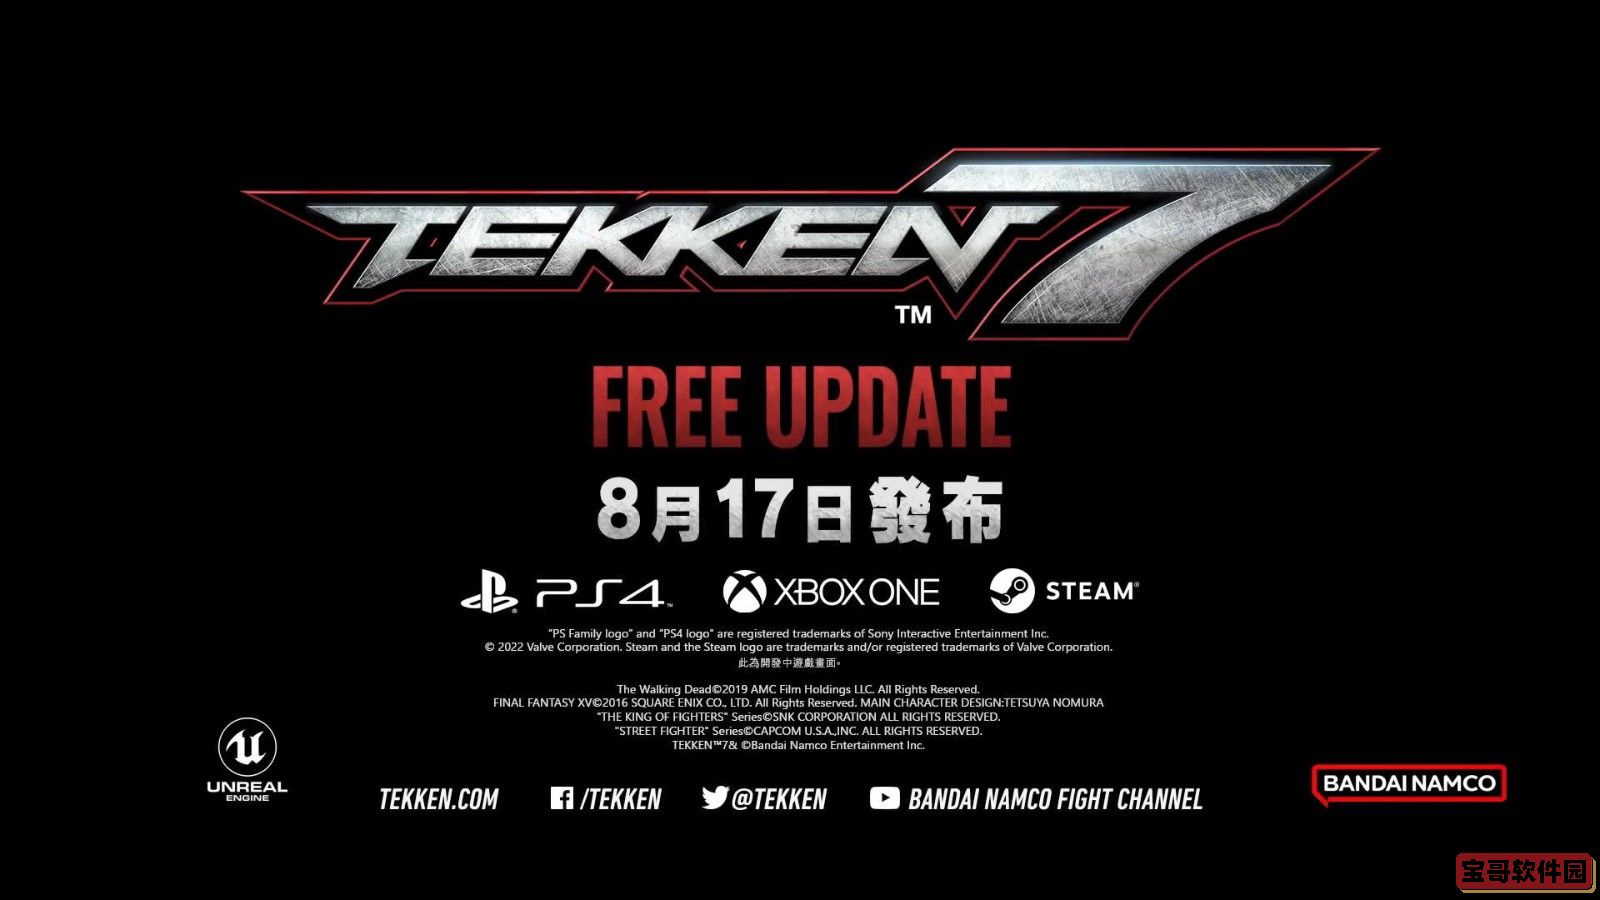 《铁拳7》公布新免费更新 8月17日上线